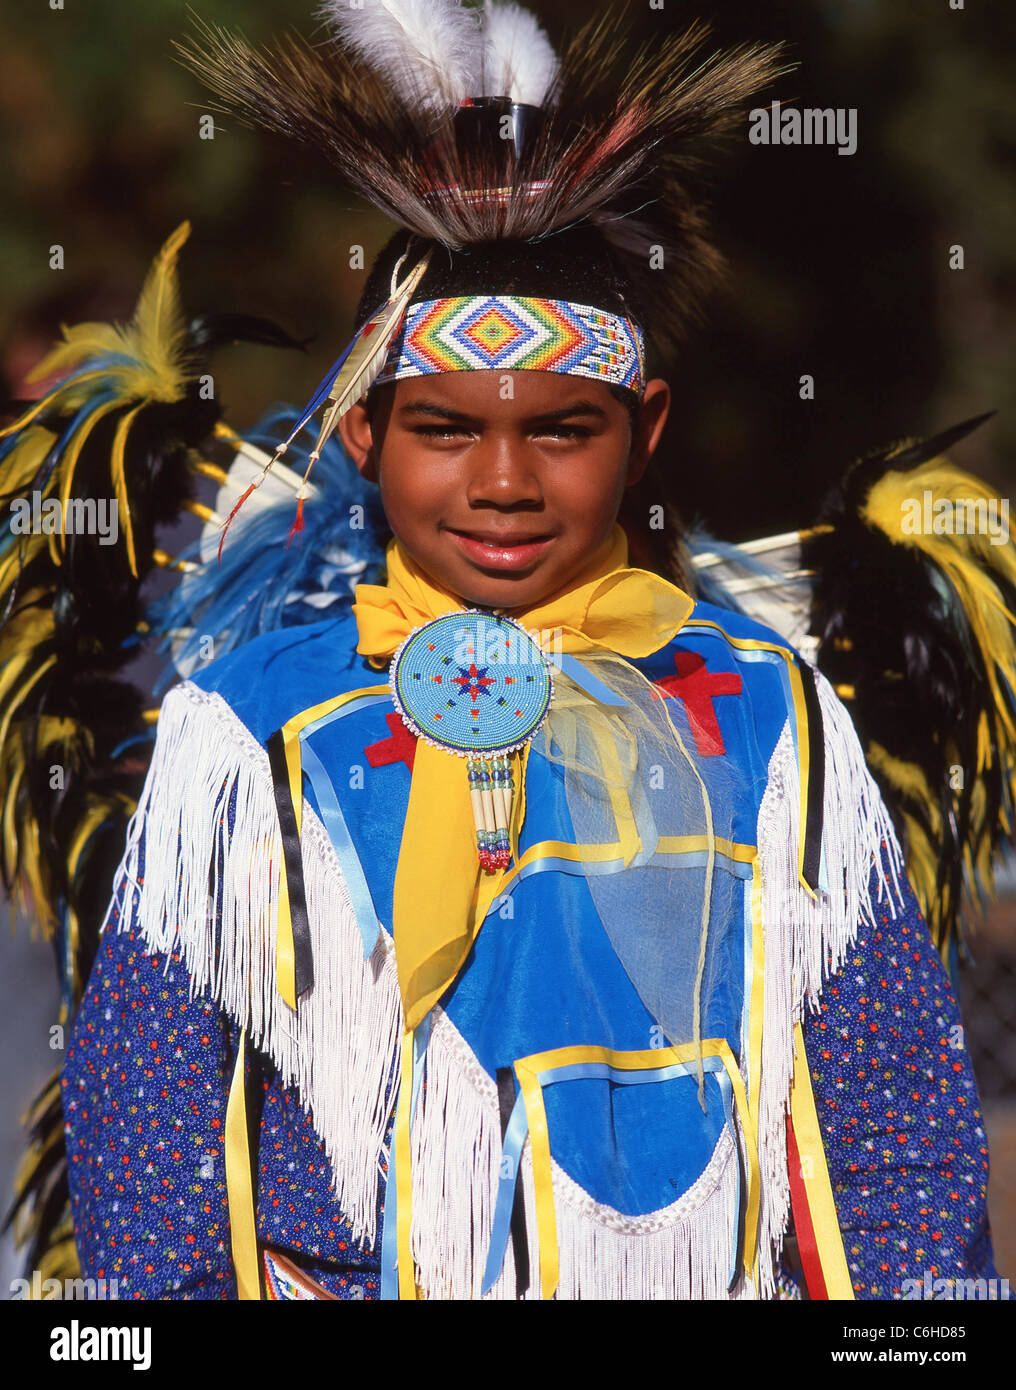 Garçon habillé en Native American Indian, Nevada, United States of America Banque D'Images